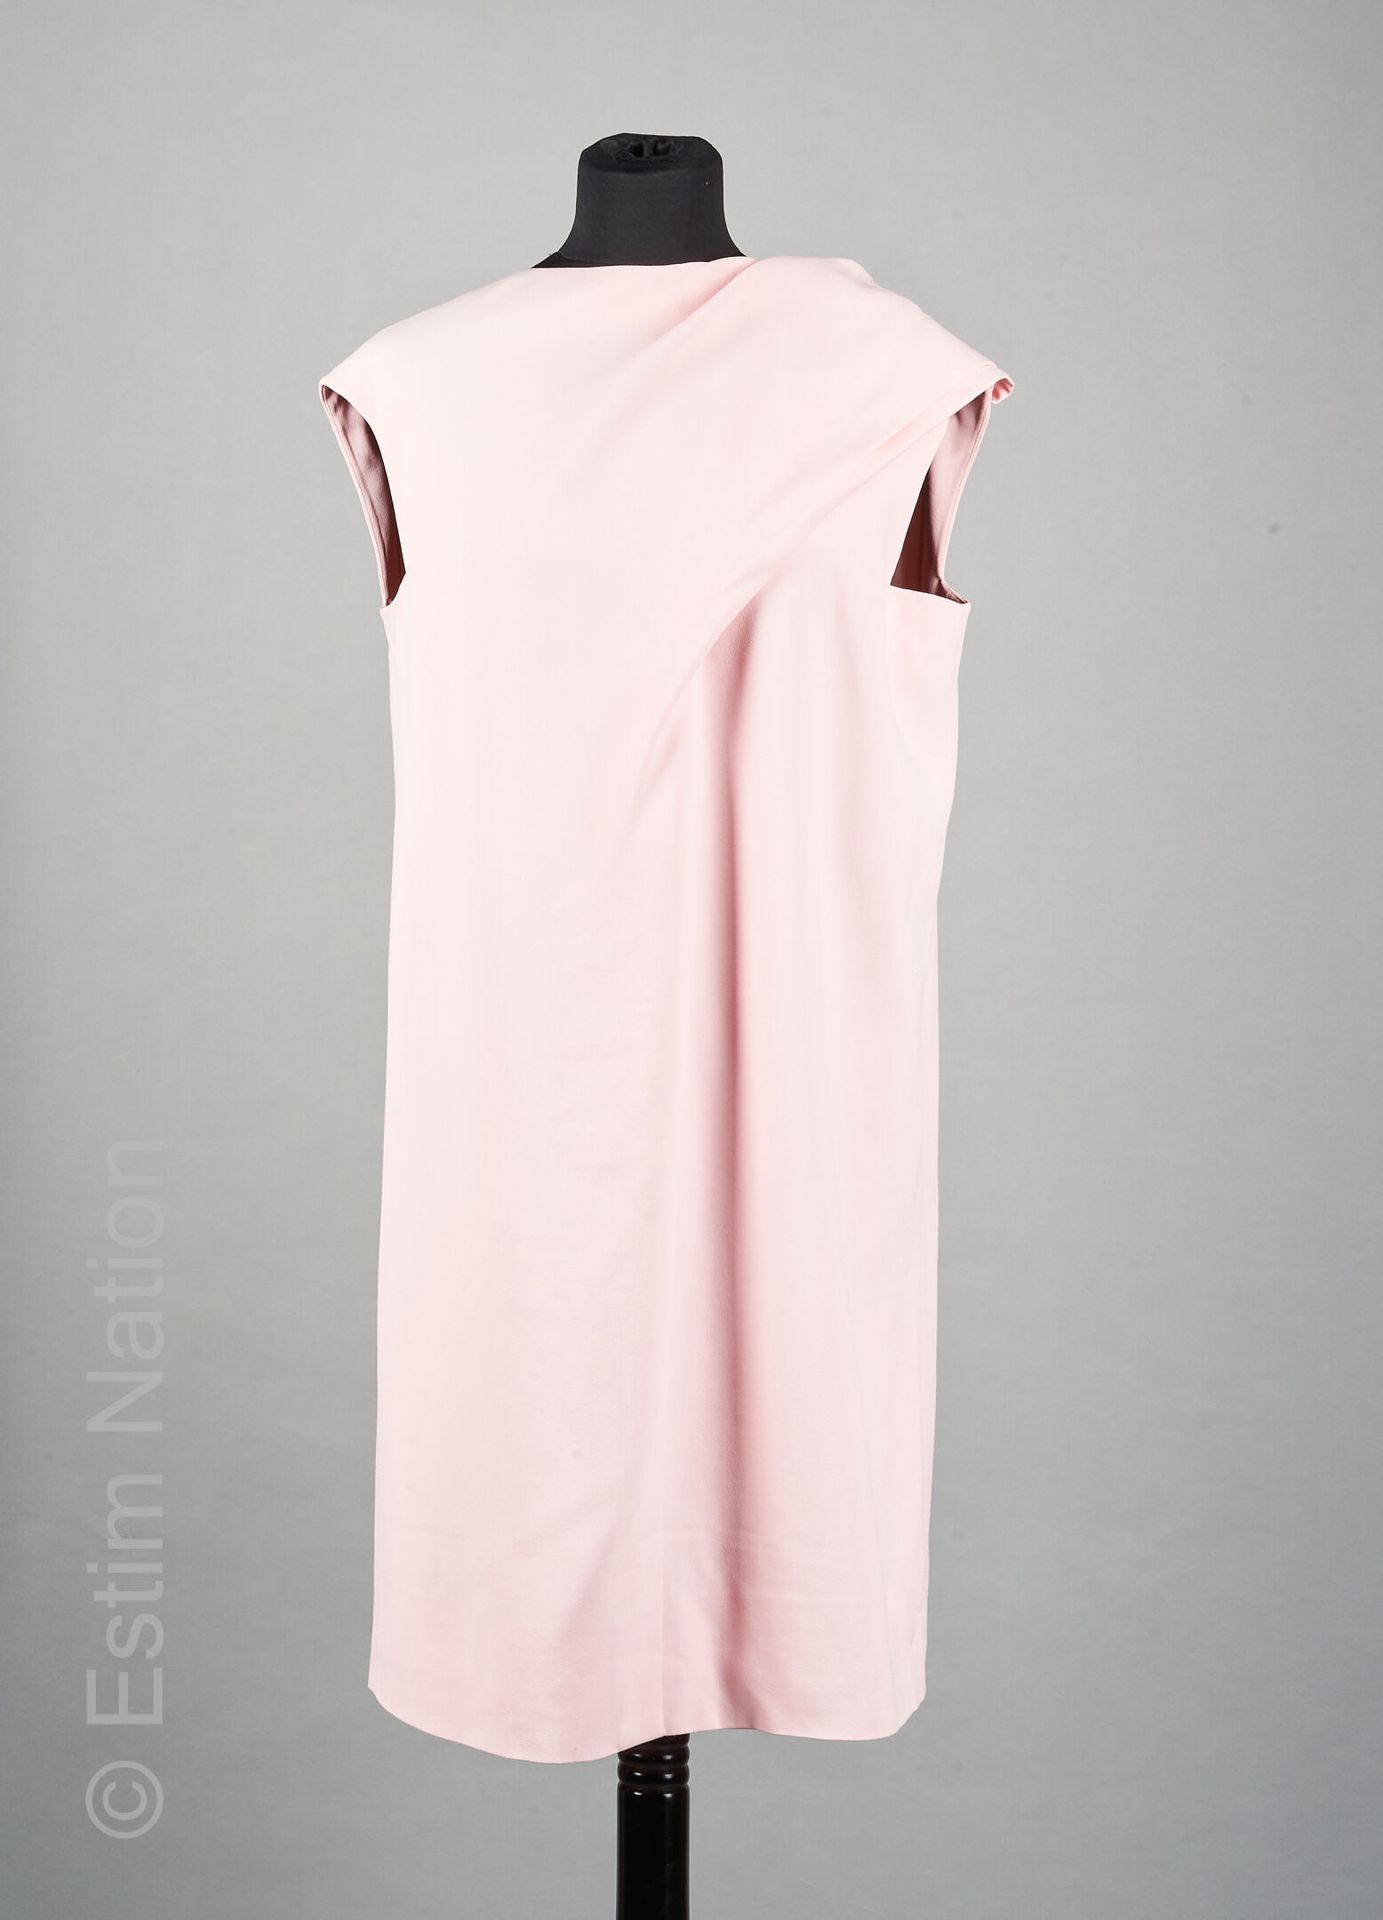 BALENCIAGA PAR ALEXANDER WANG (2013) Kleid aus Acetatkrepp und Rayon in zartem R&hellip;